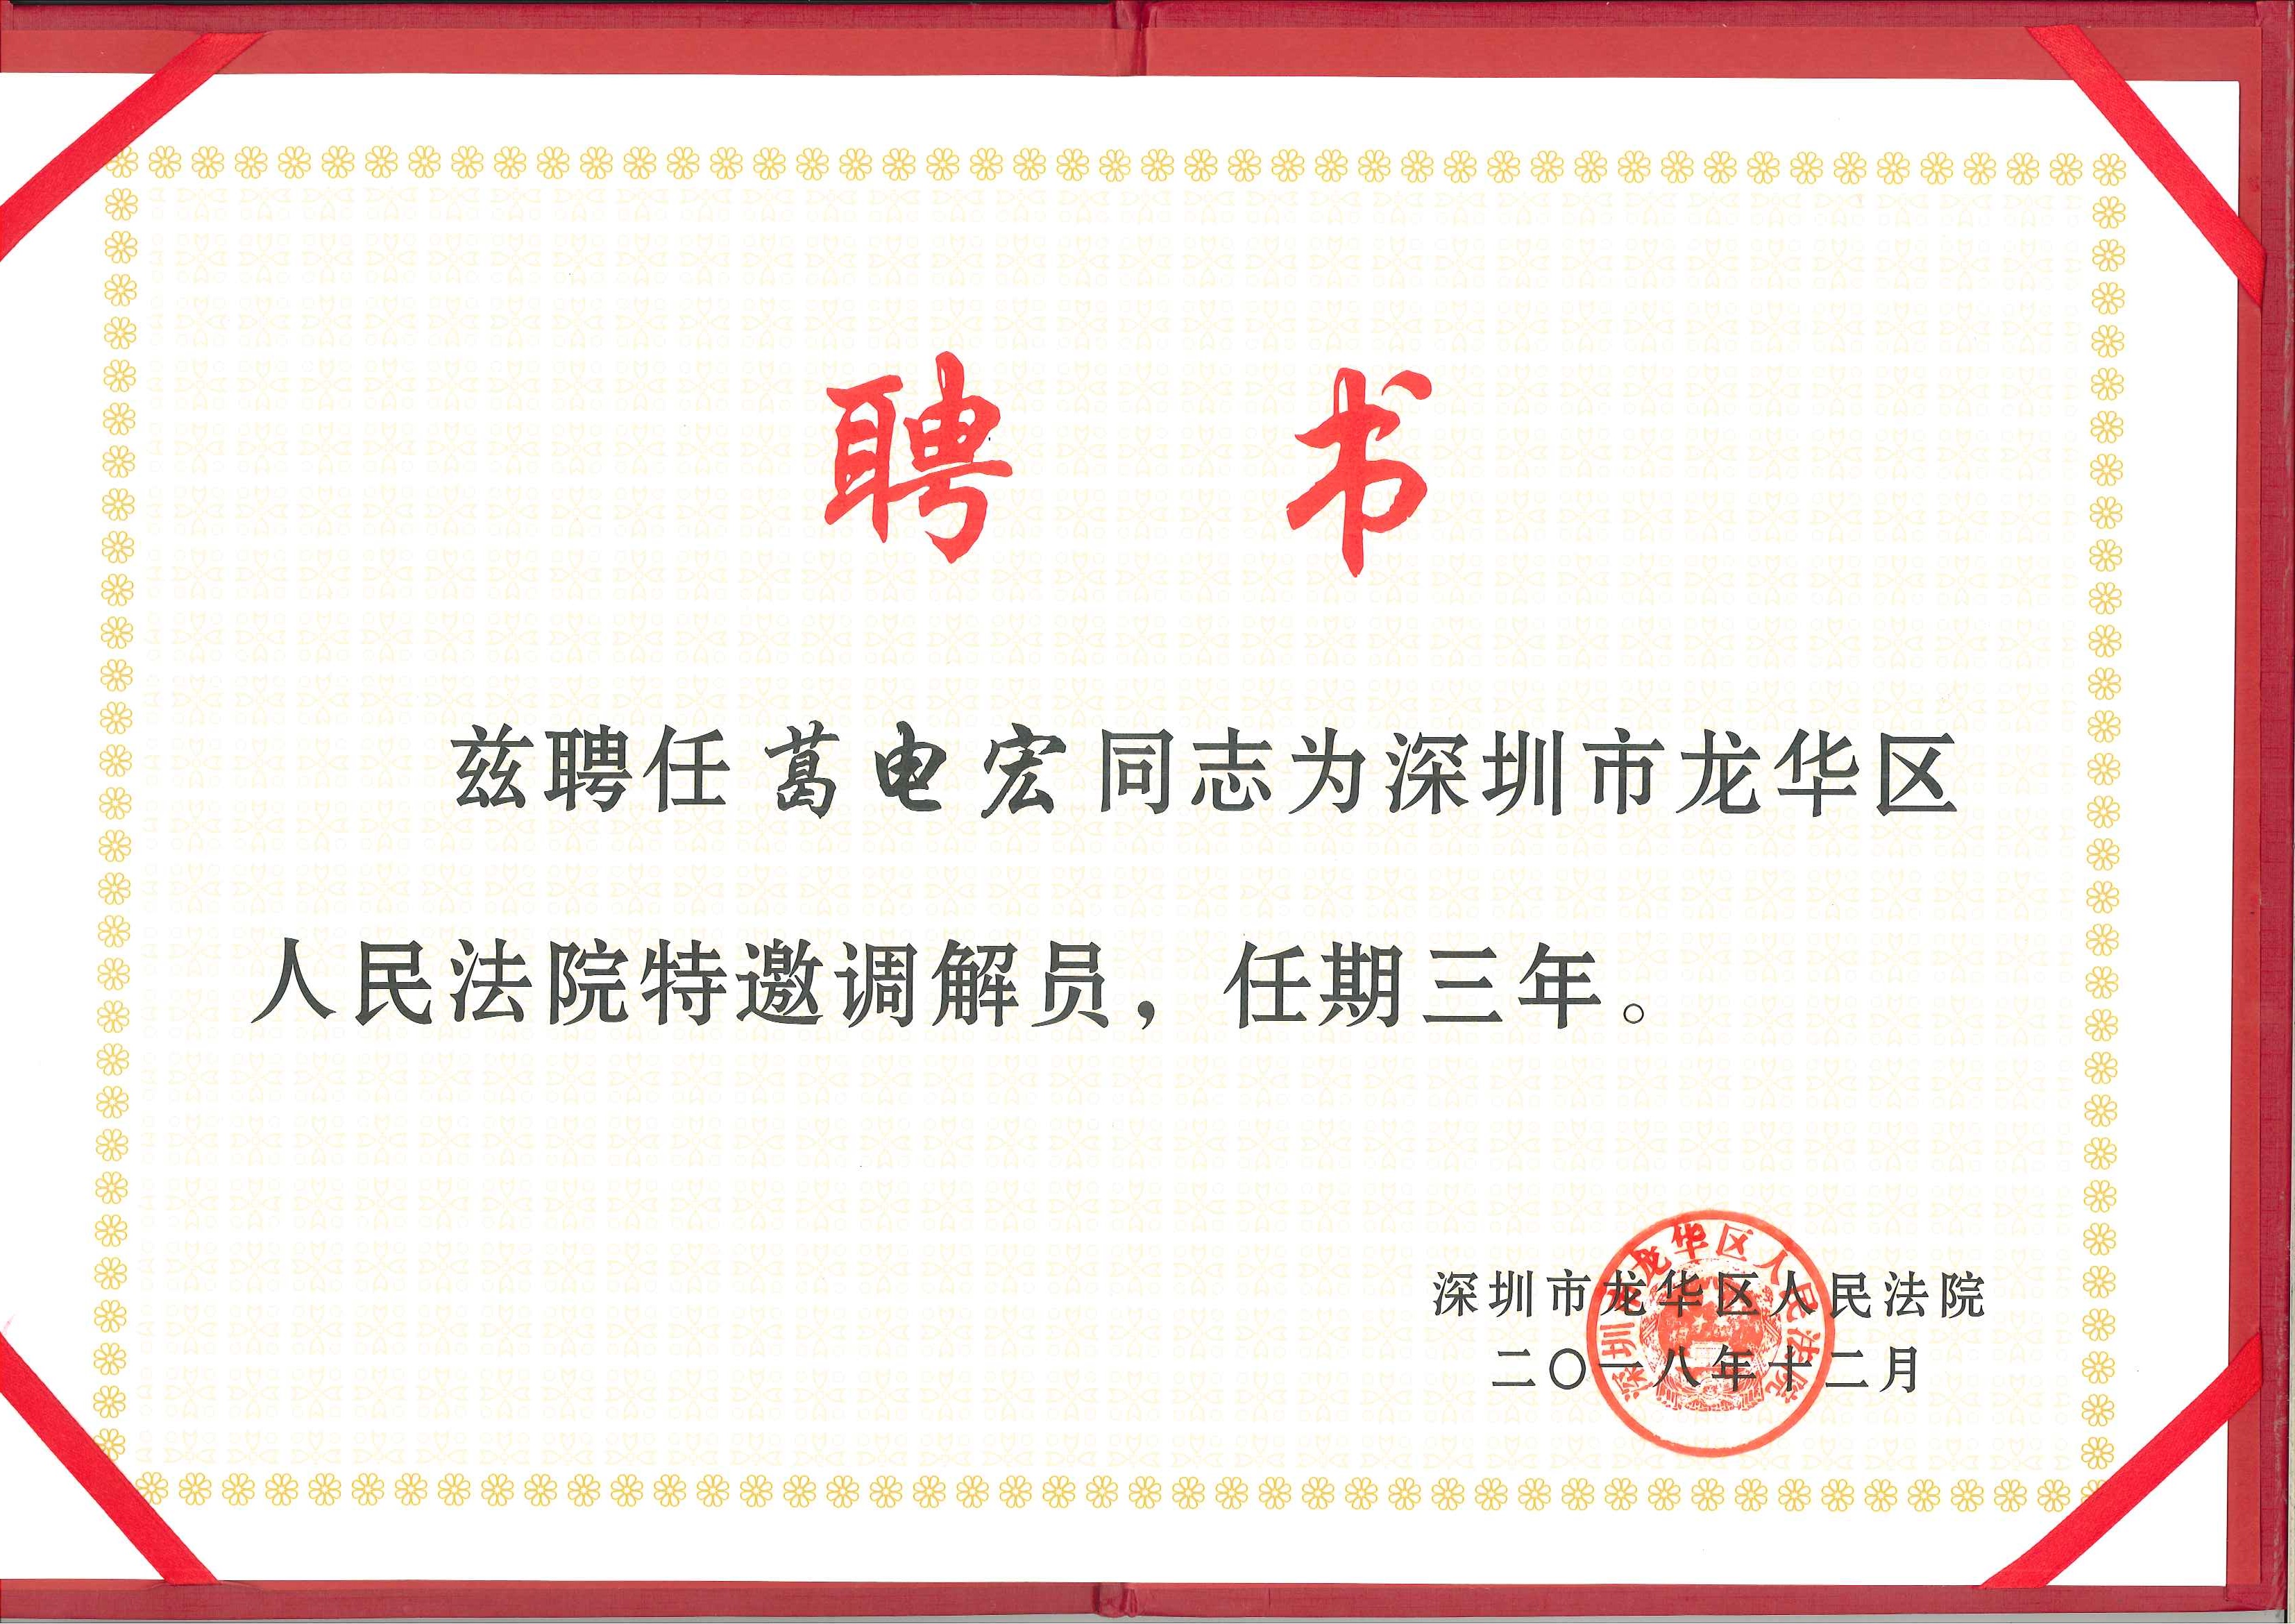 葛电宏被聘任为深圳龙华区人民法院特邀调解员，任期三年